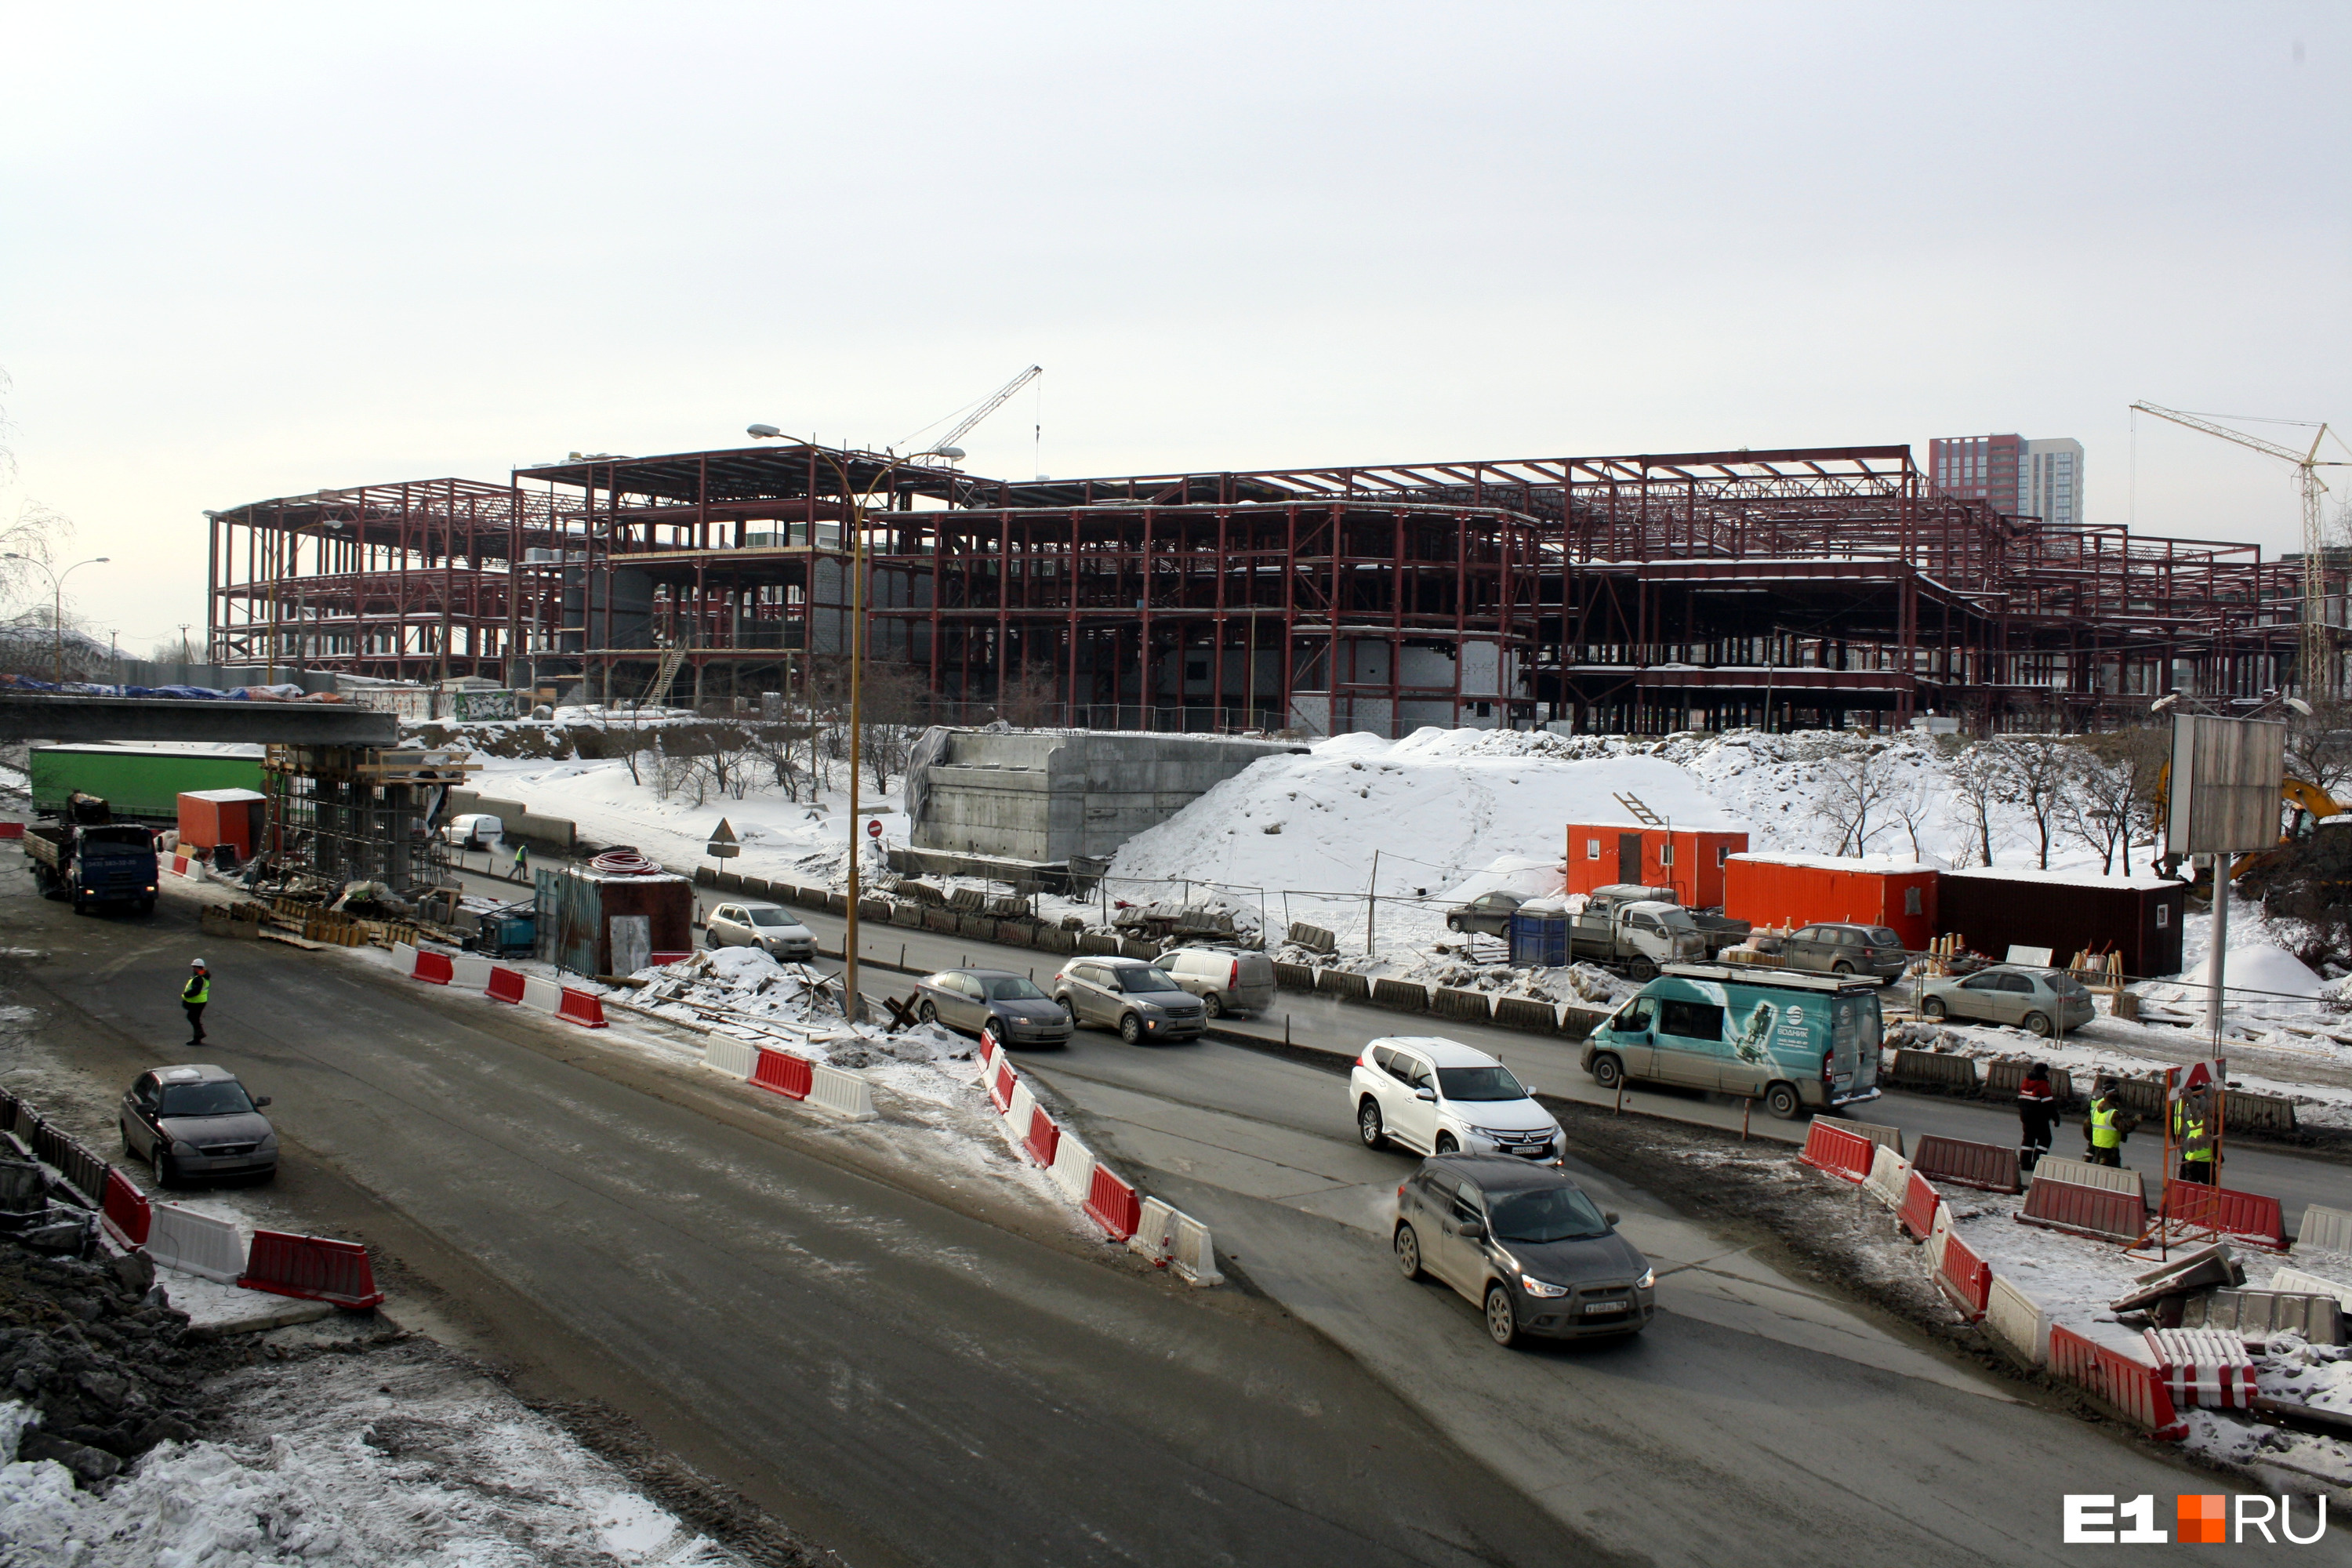 Корпуса будущего автовокзала растут с каждым месяцем. Стройку планируют завершить в 2023 году